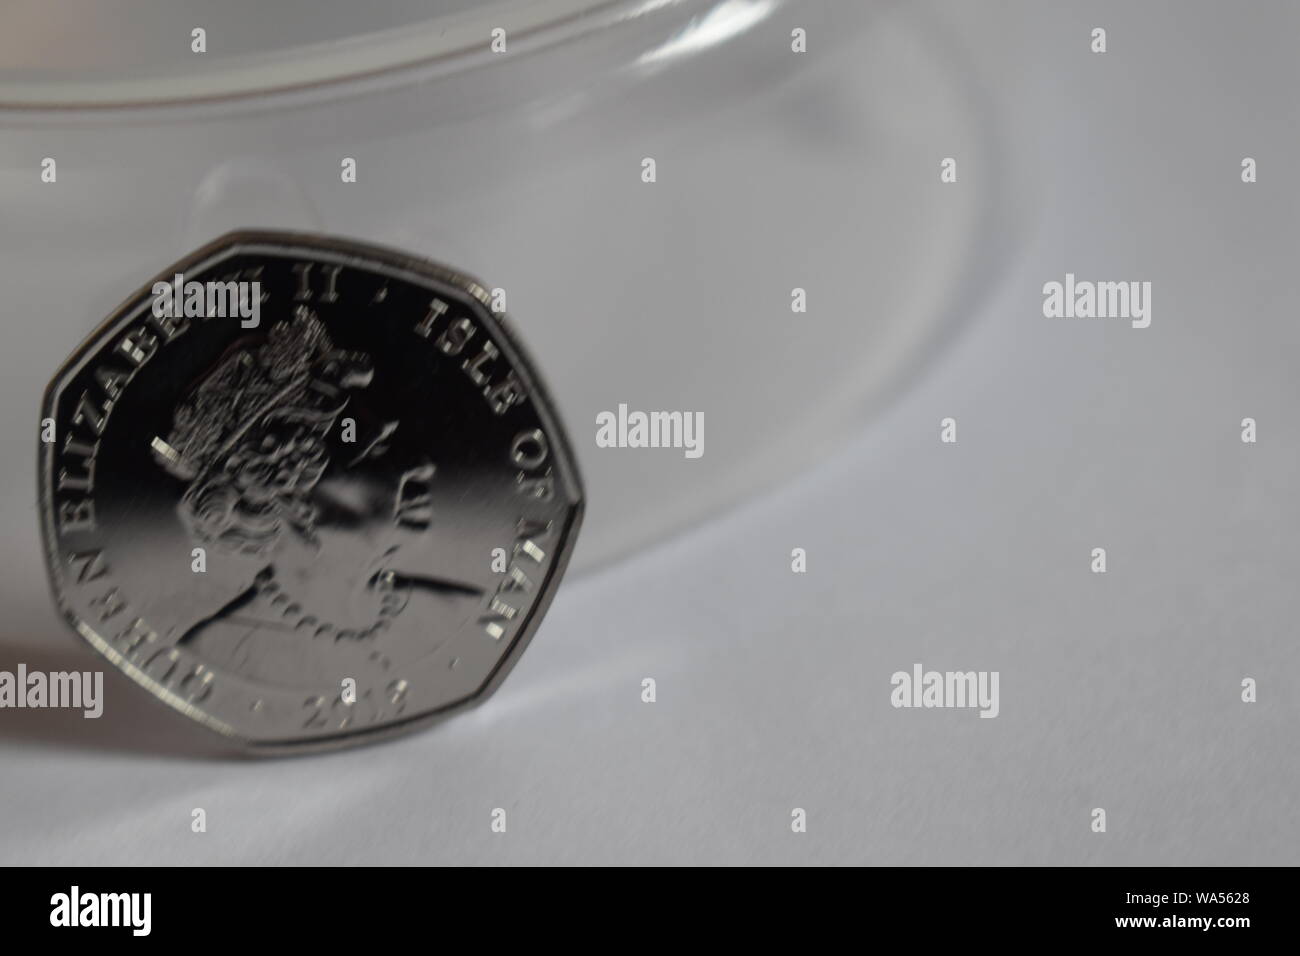 Tout nouveau revers de la version 2019 par la Monnaie royale canadienne, du nouveau Peter Pan Cinquante Pence. Queens Head Set contre un arrière-plan transparent et noir. Banque D'Images